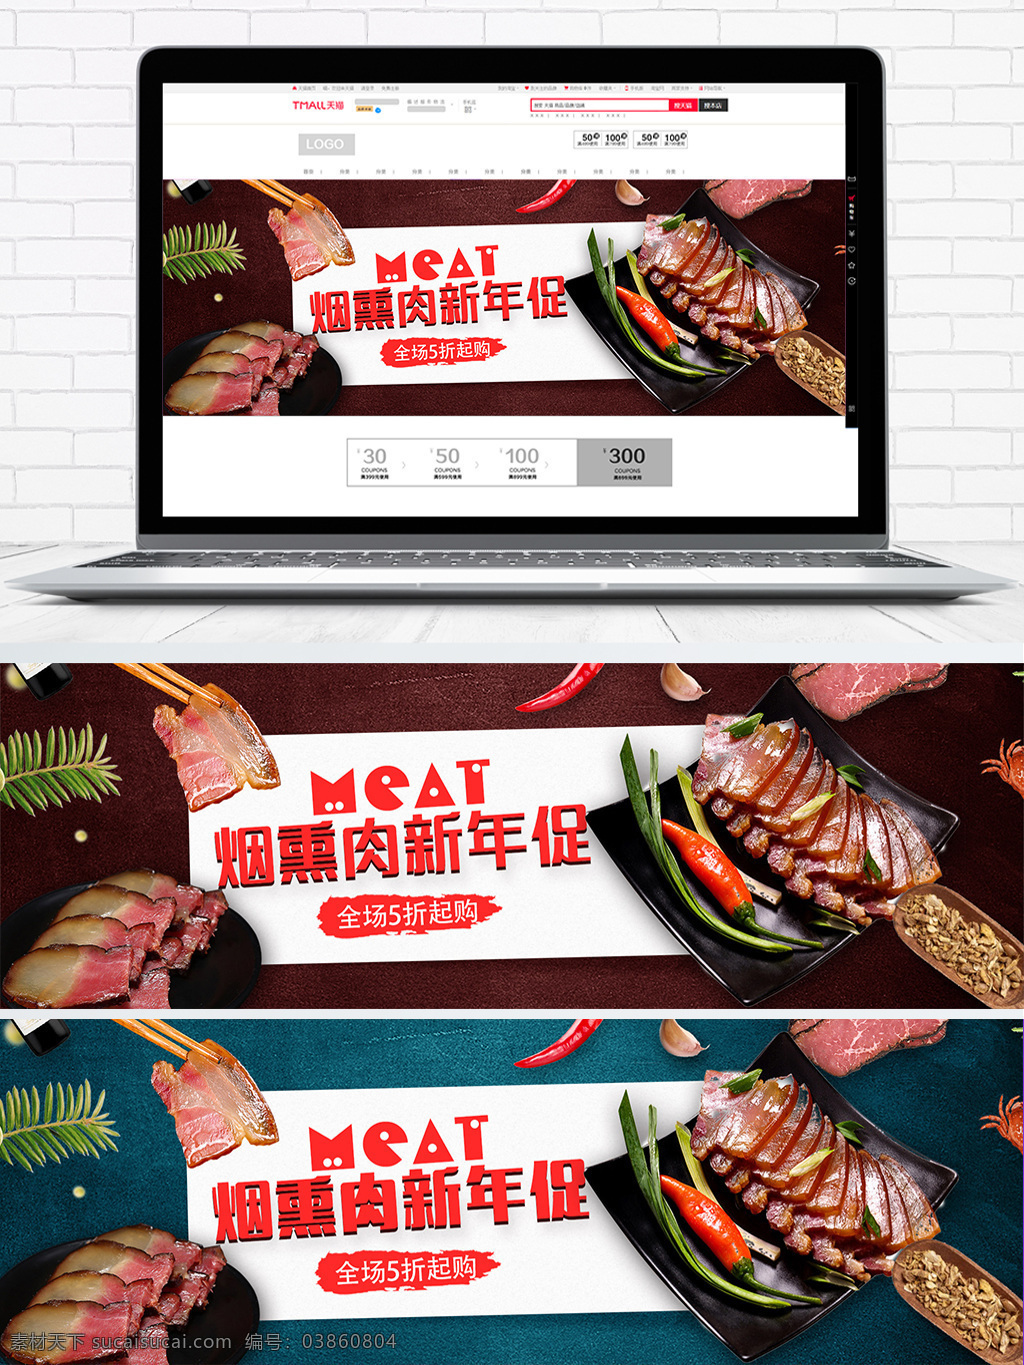 美食 湘 味 腊肉 淘宝 海报 banner 促销 湖南美食 食品 食物 熟食 熟食大集合 湘味腊肉 新年促